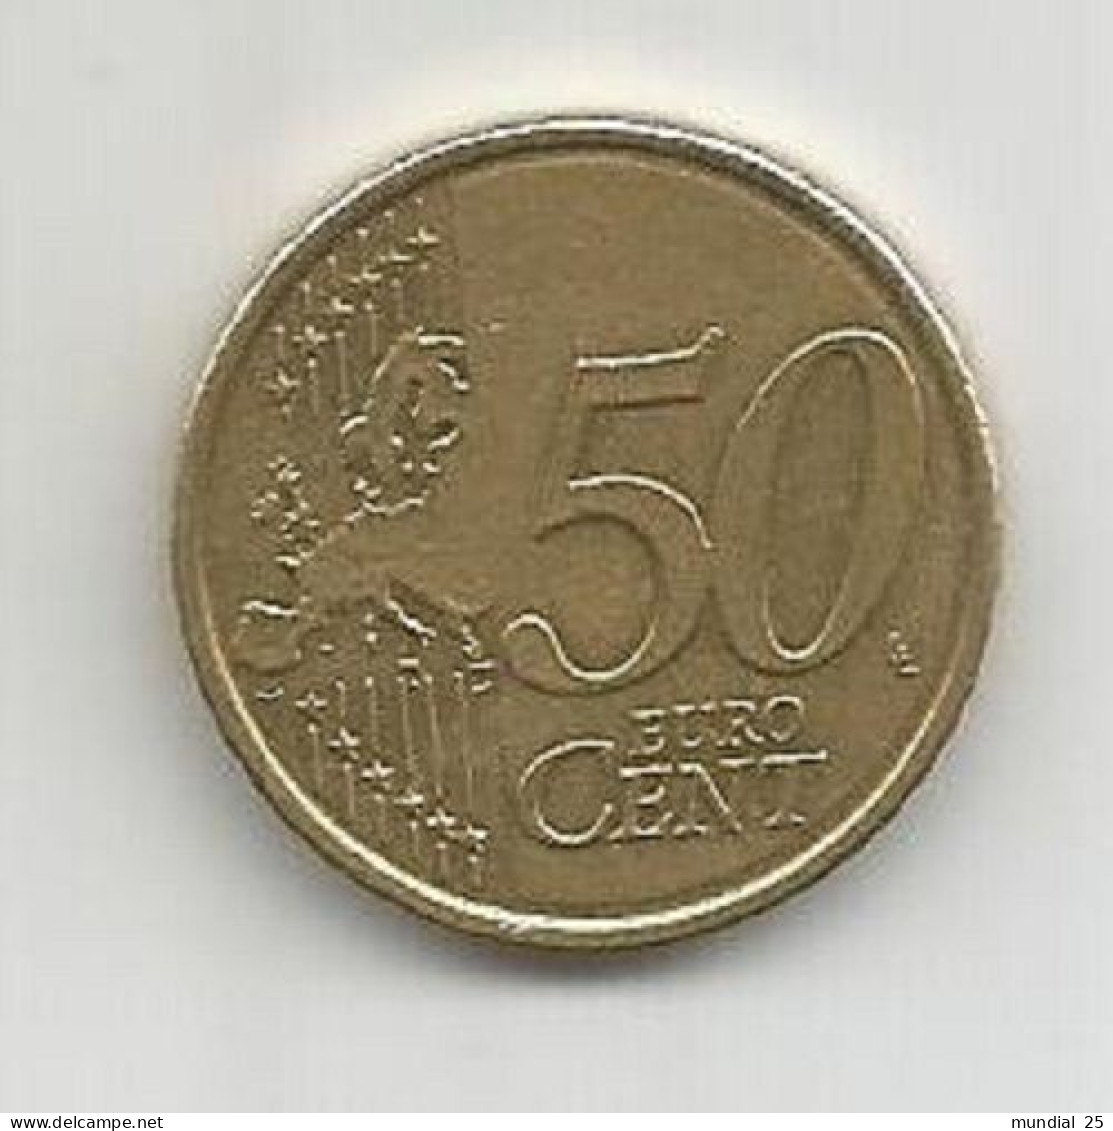 BELGIUM 50 EURO CENT 2012 - Bélgica